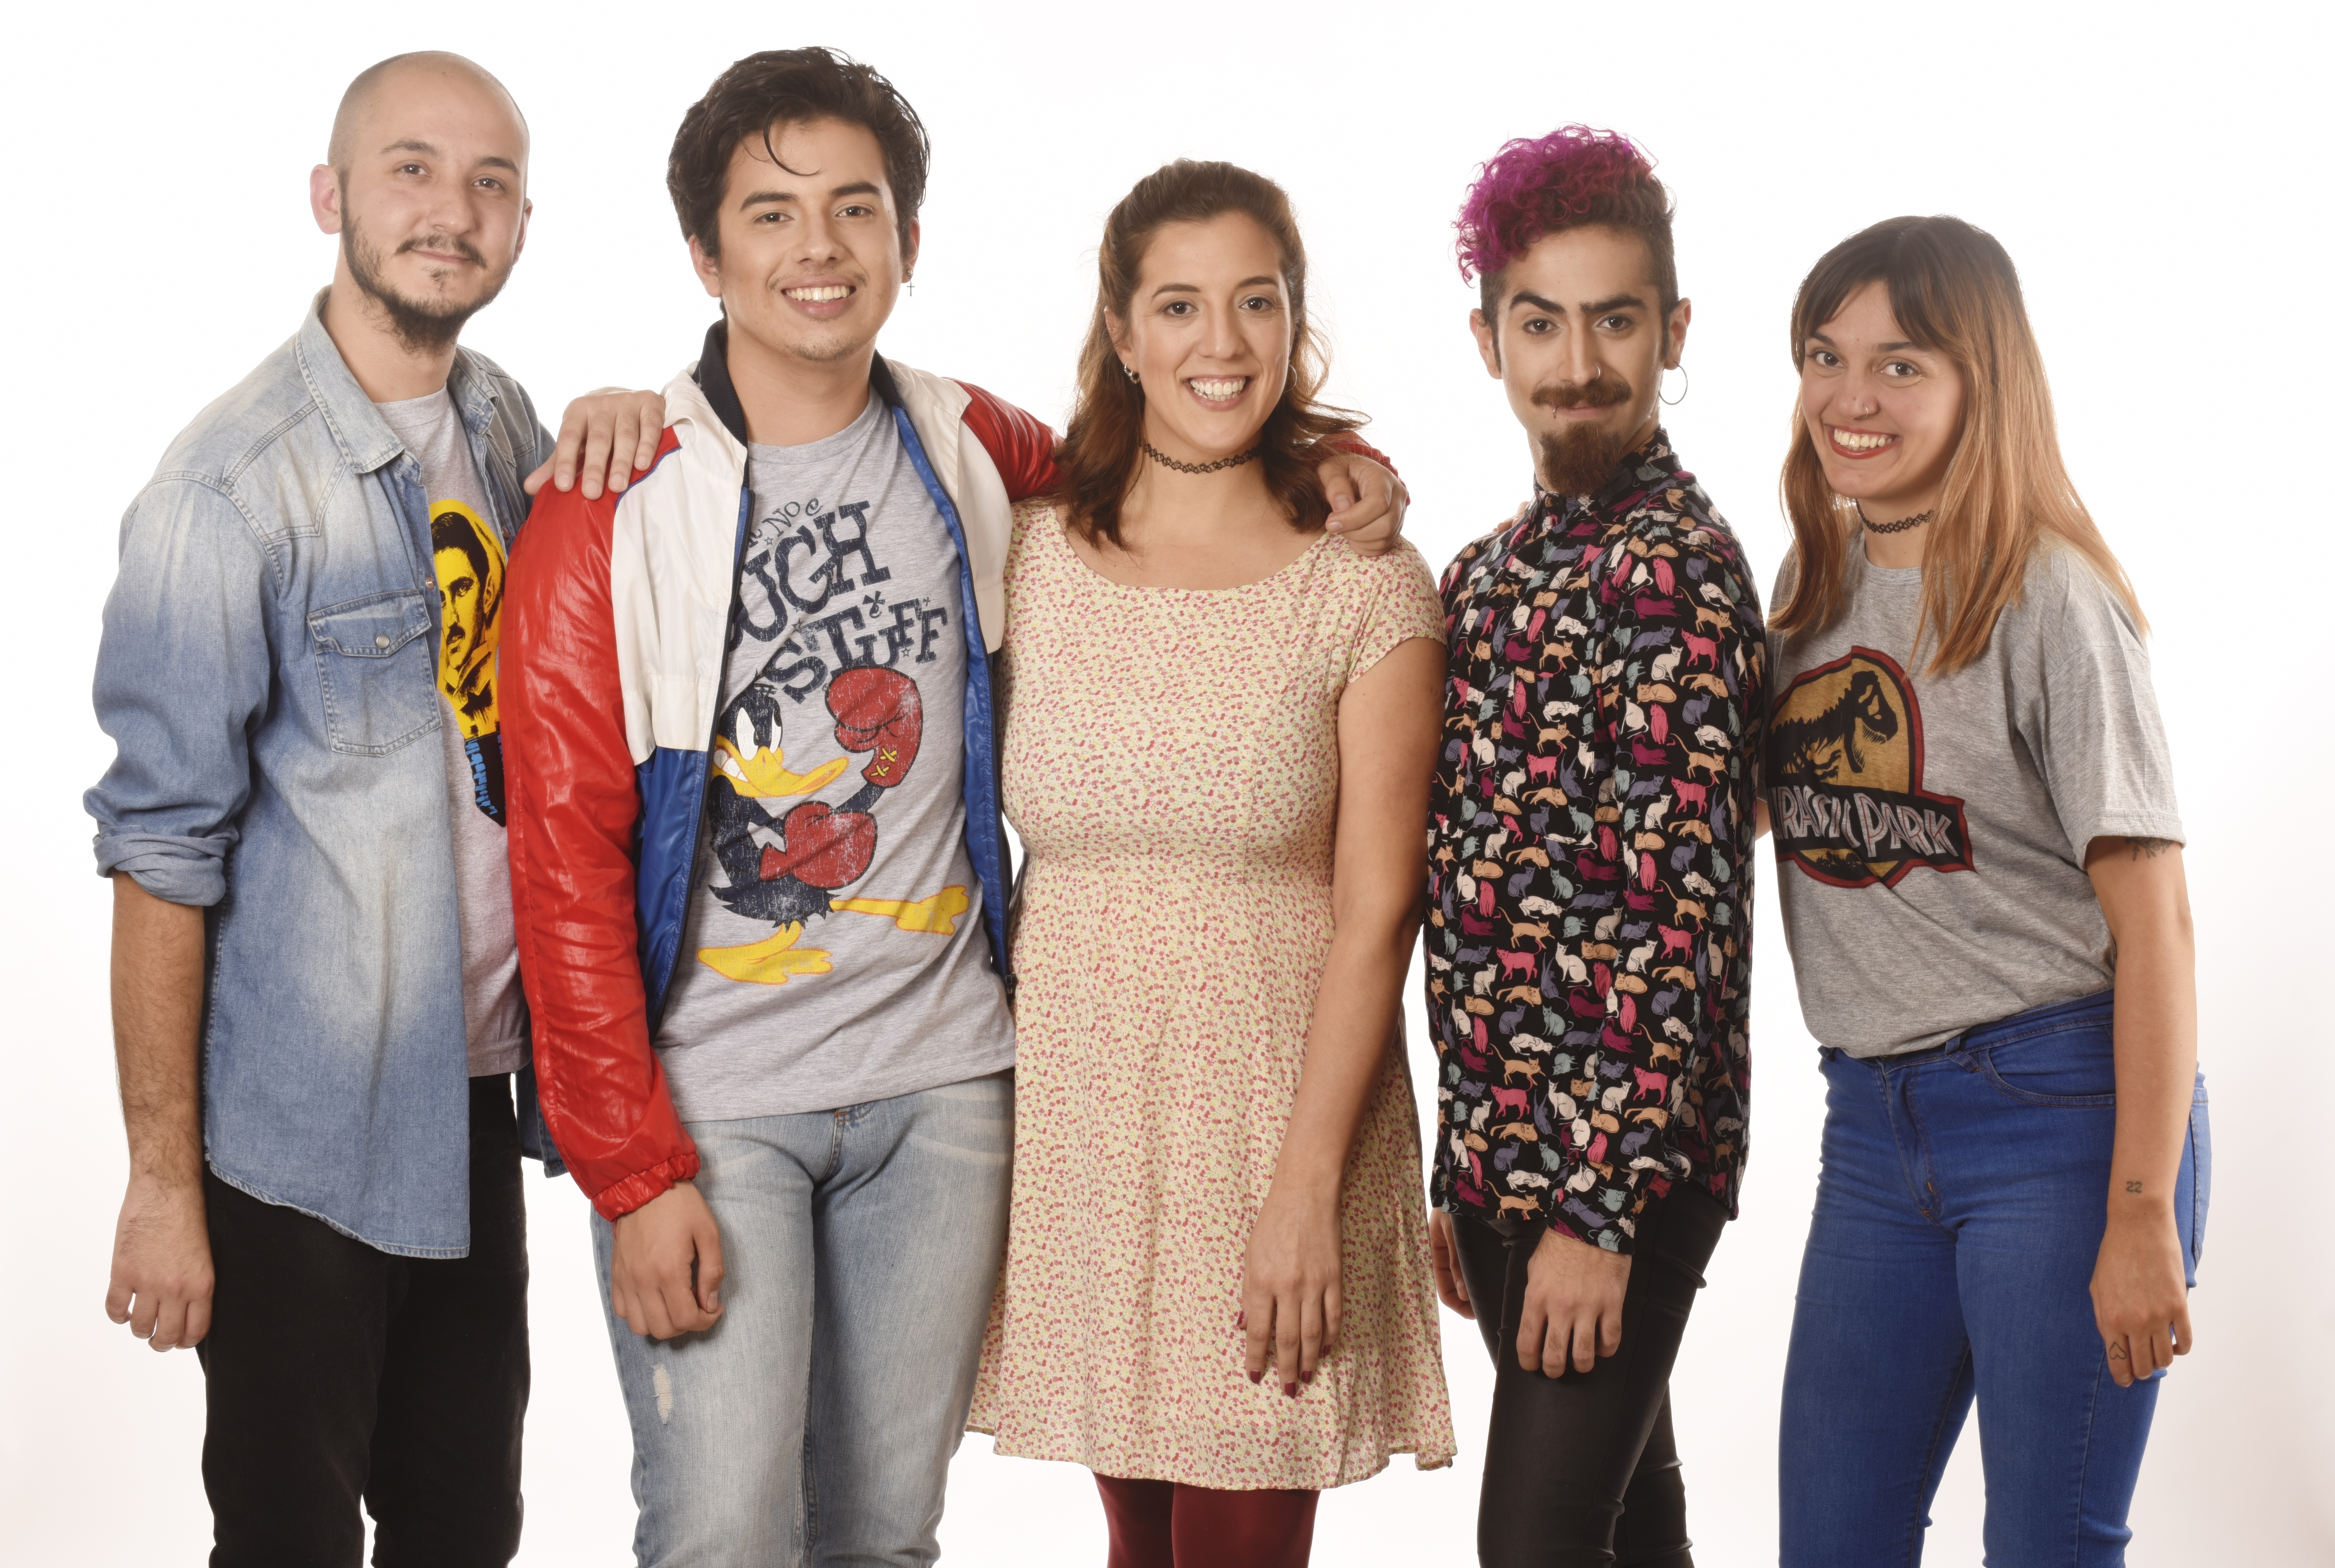 Izquierda a derecha: Ezequiel Elizalde, Cristian Gajardo, Antonella Gatti, Nazareno Marozzi y Agustina Rodriguez